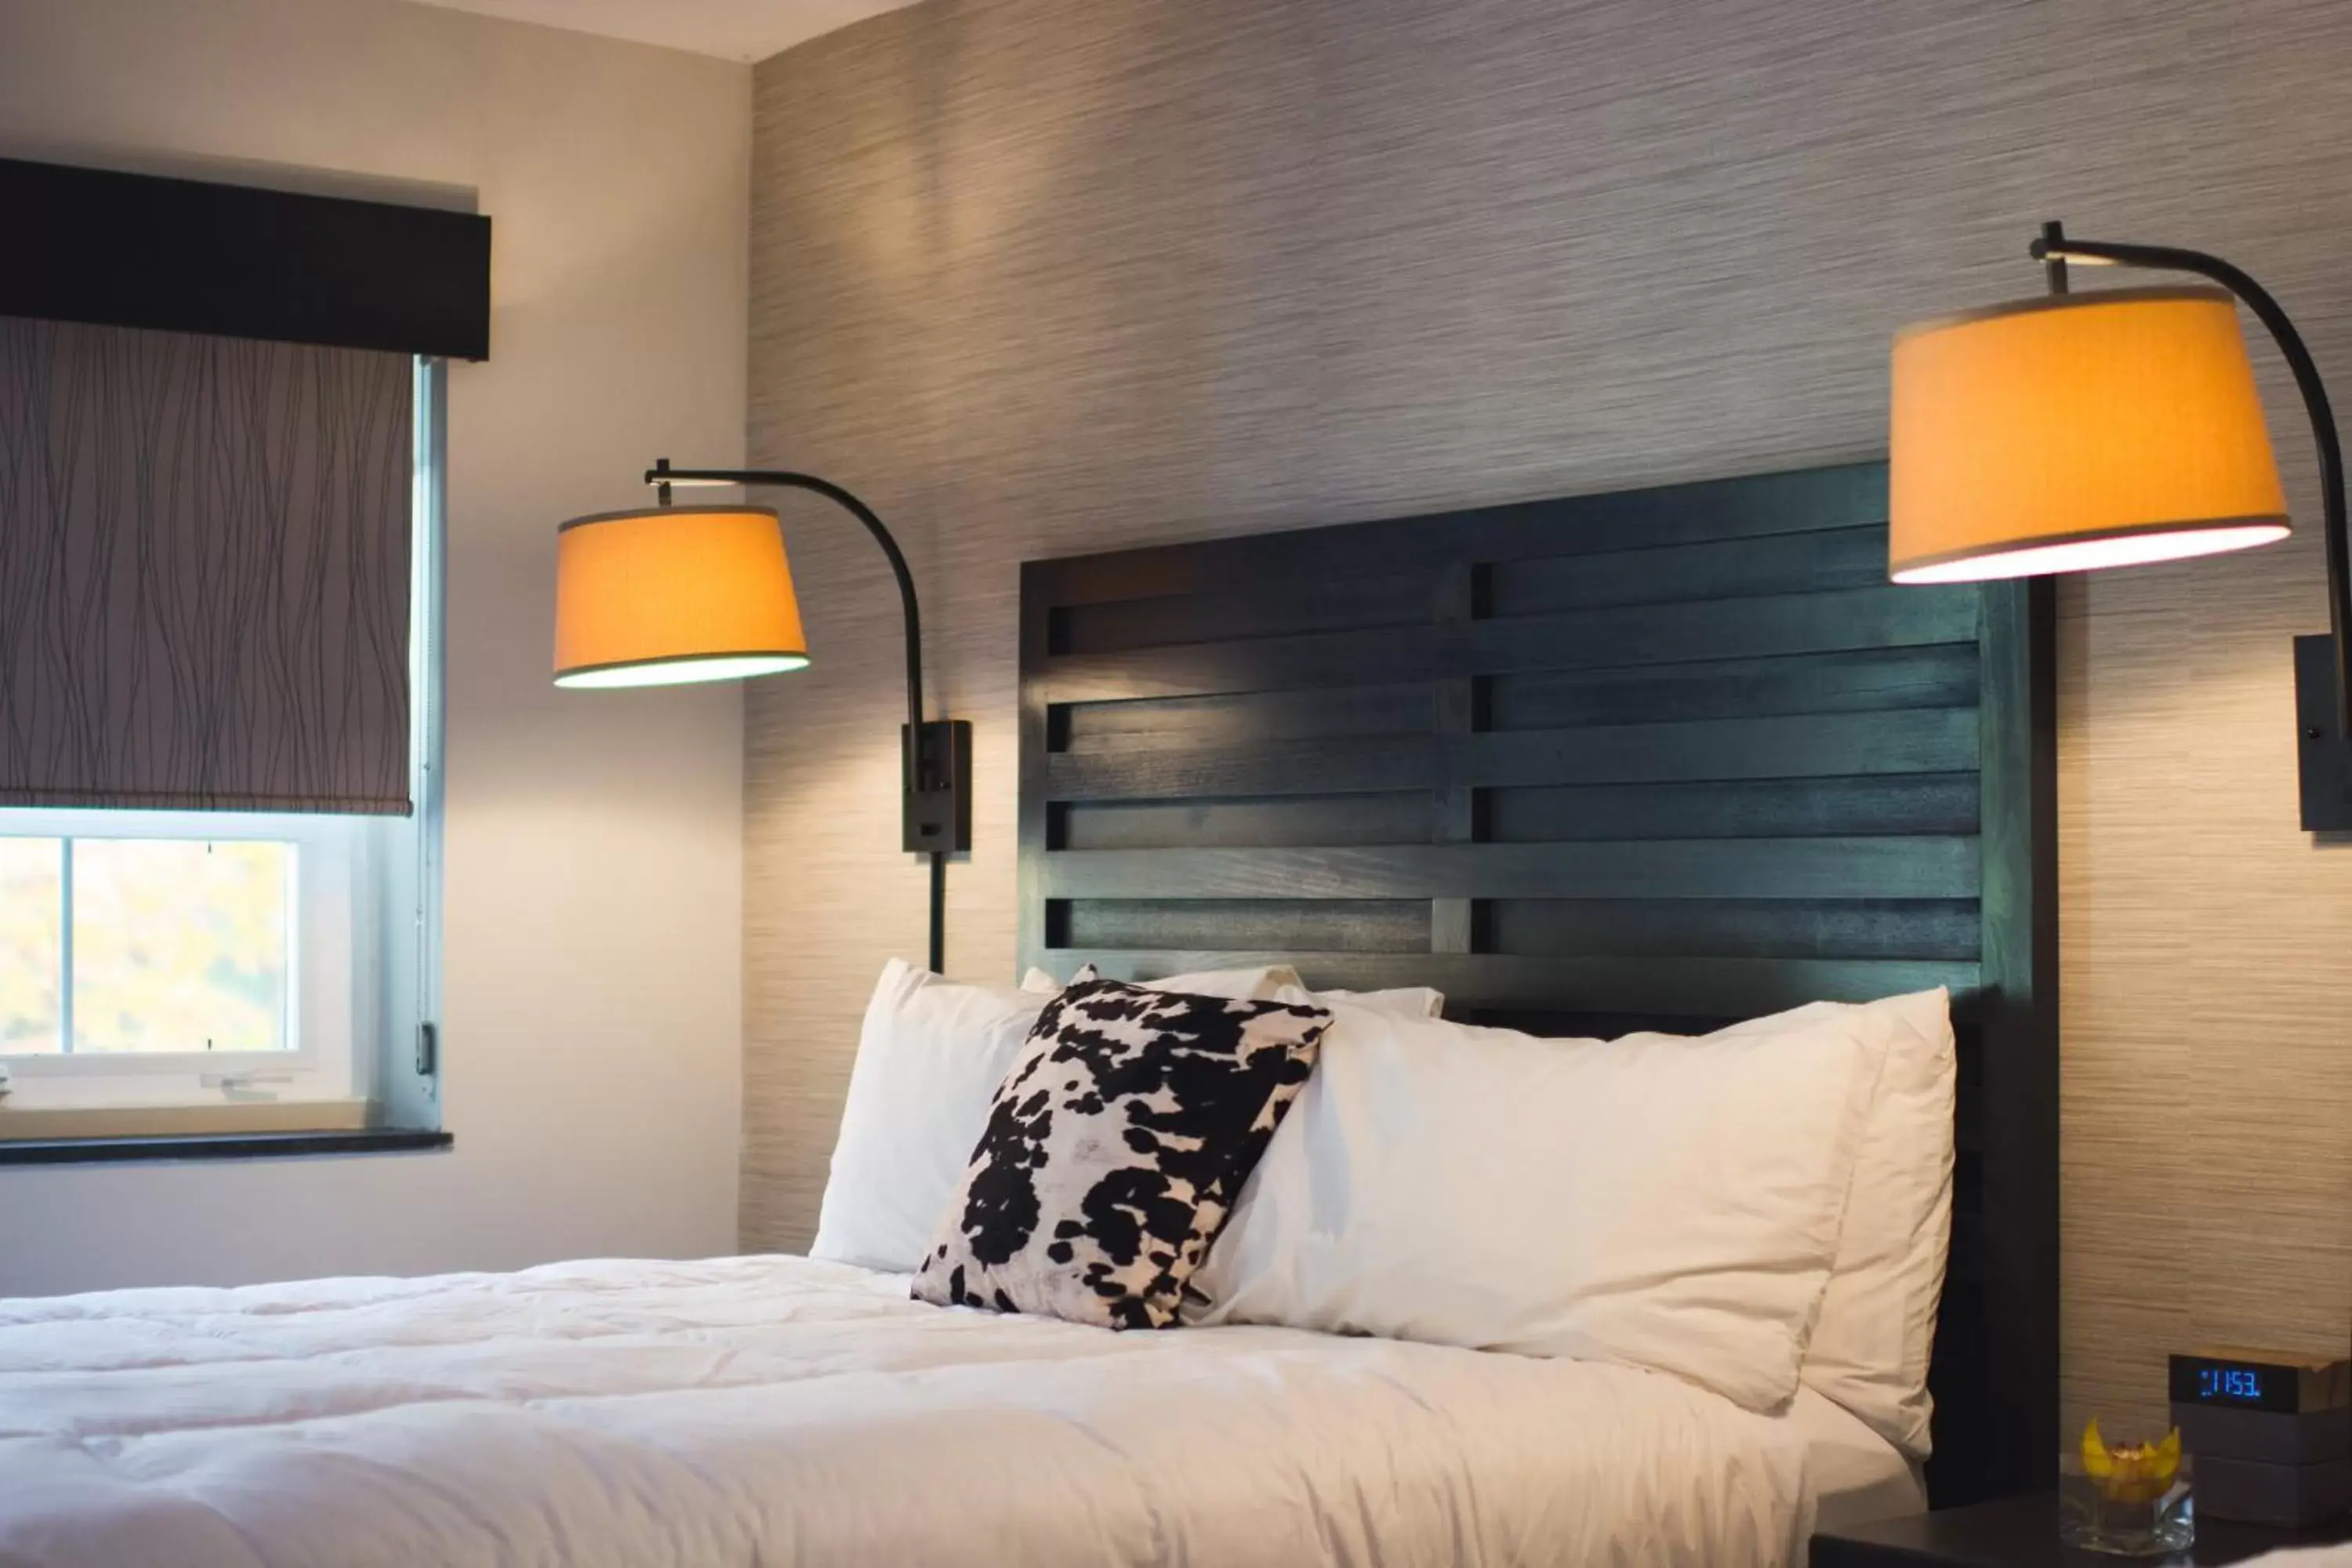 Executive King Room in Hi-Ho: A Hi-Tech Hotel